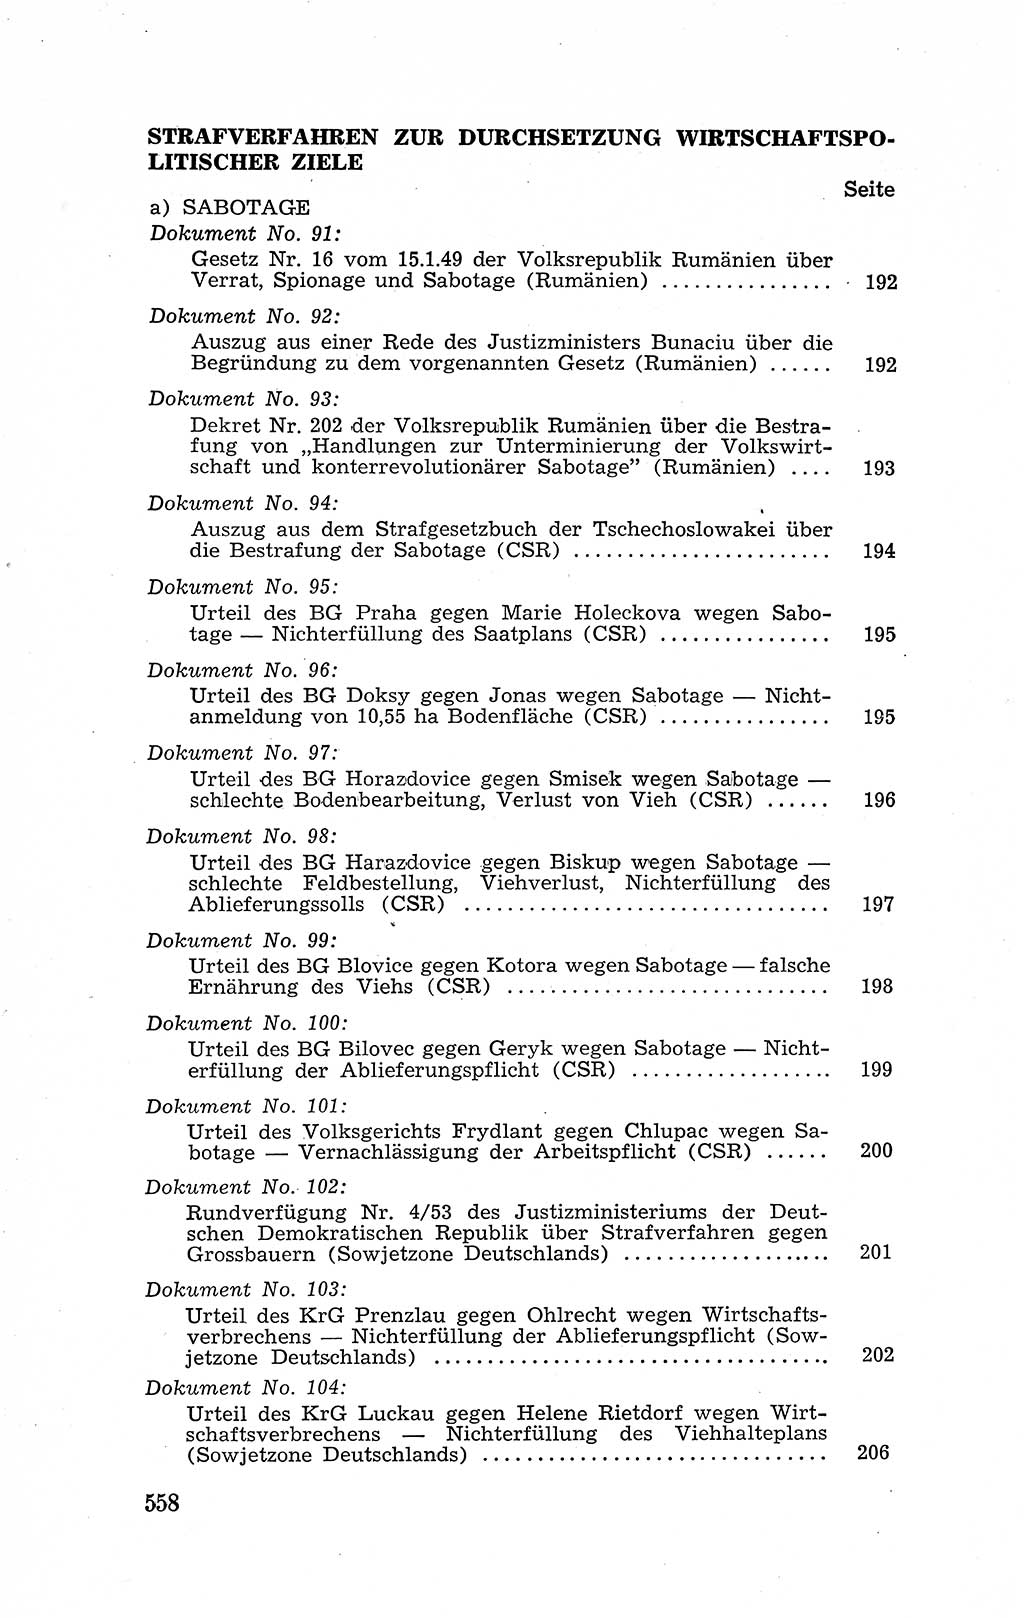 Recht in Fesseln, Dokumente, Internationale Juristen-Kommission [Bundesrepublik Deutschland (BRD)] 1955, Seite 558 (R. Dok. IJK BRD 1955, S. 558)